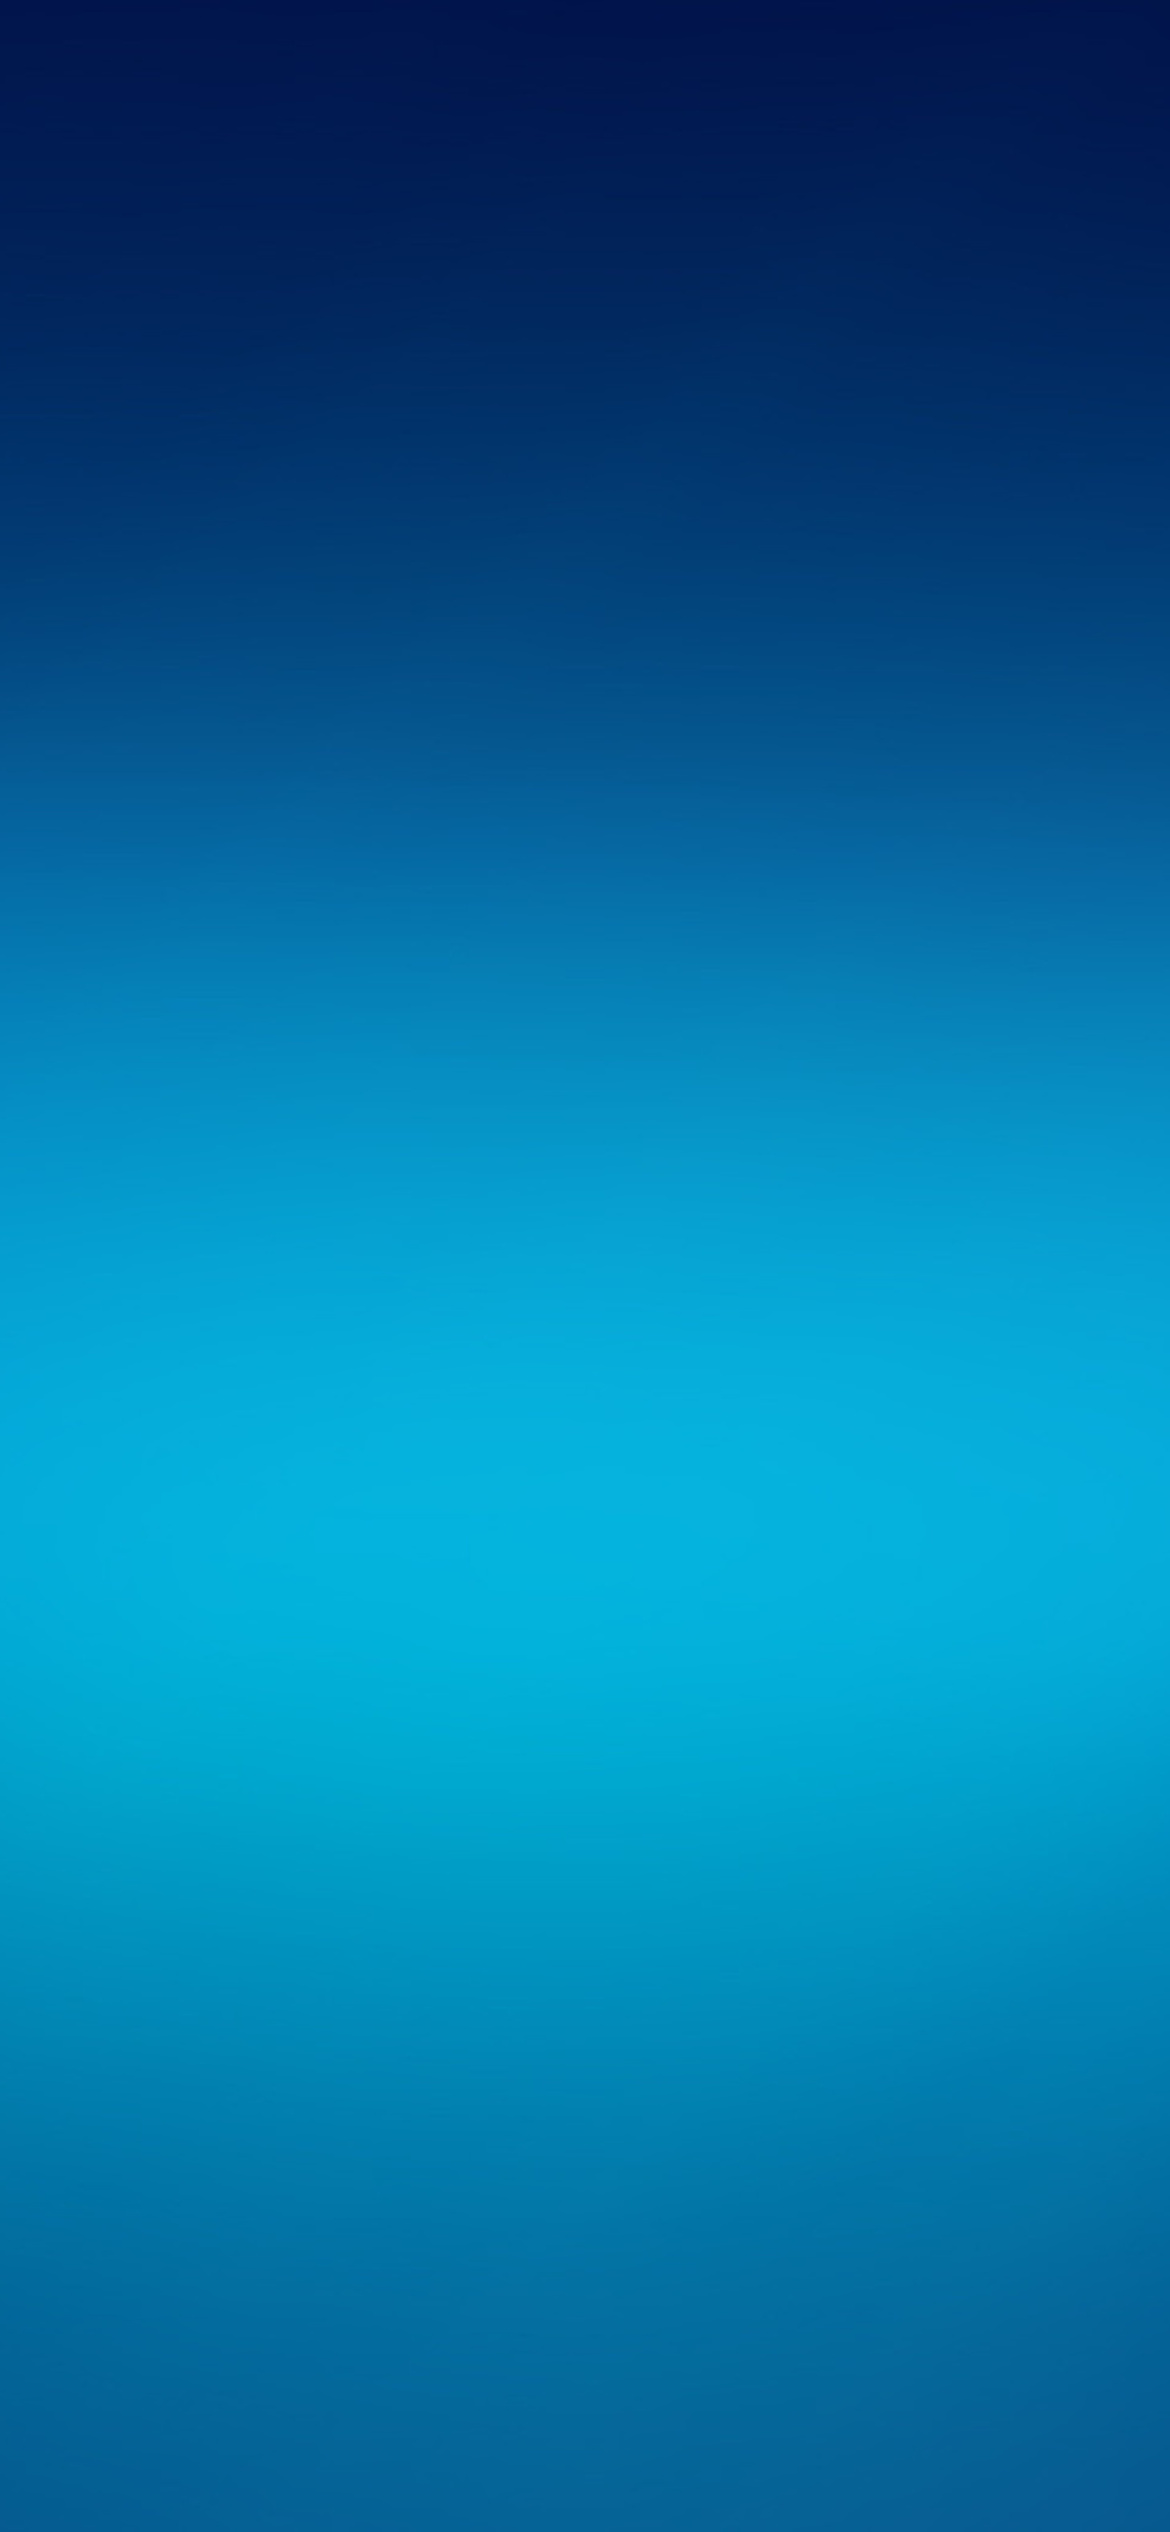 Das Blue Widescreen Background Wallpaper 1170x2532